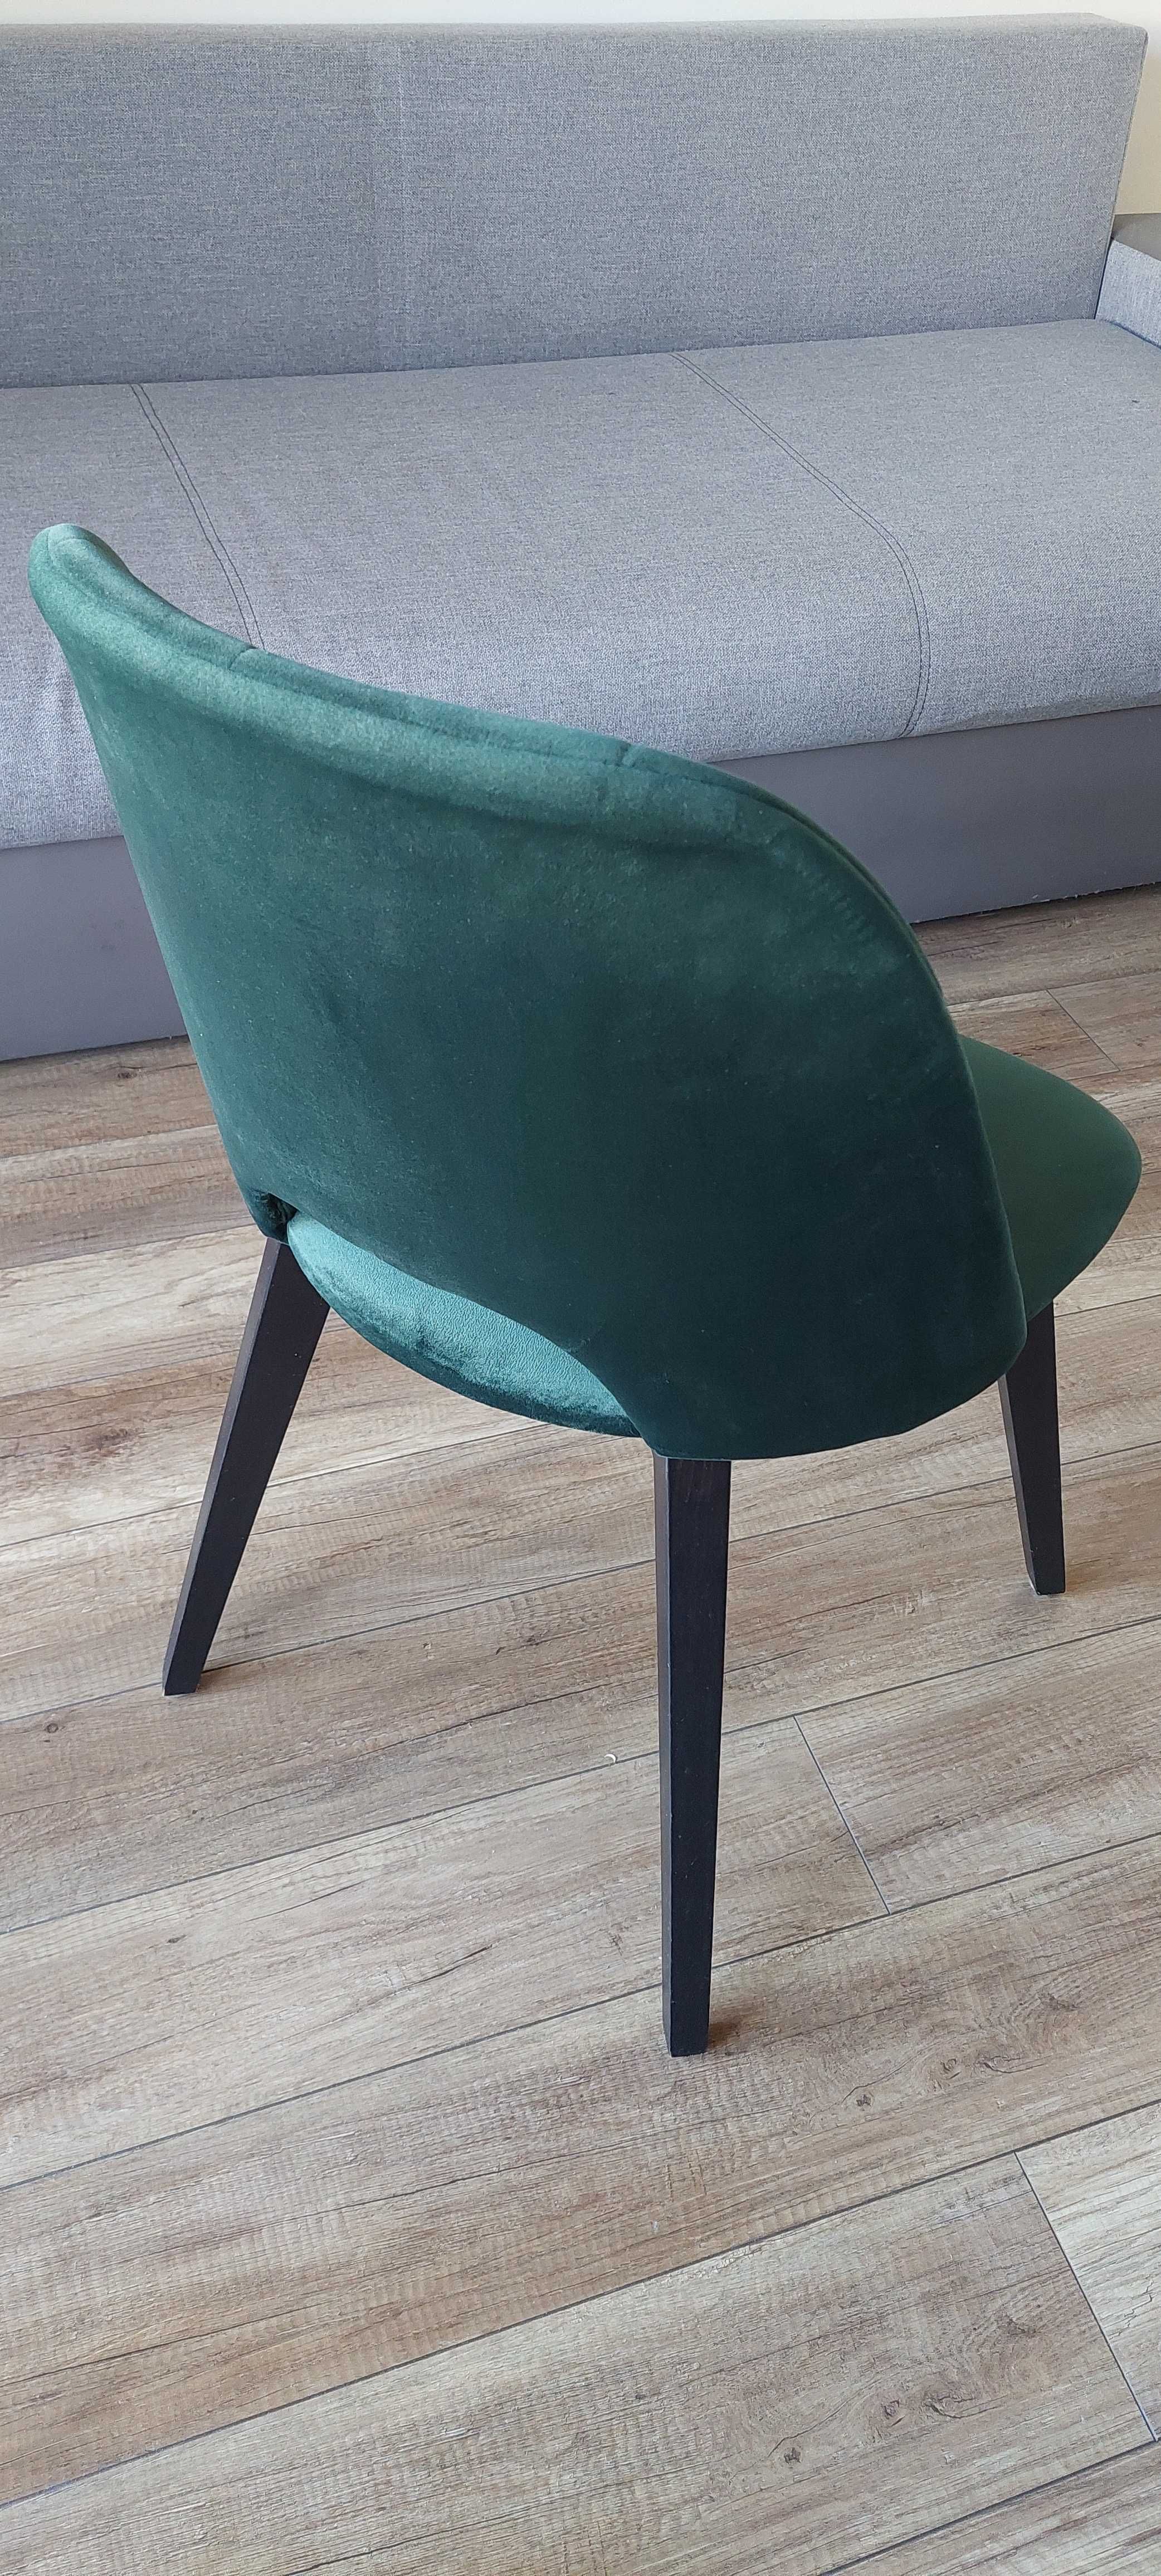 Krzesło welurowe butelkowa zieleń, drewniane nogi, dostępne 4szt.